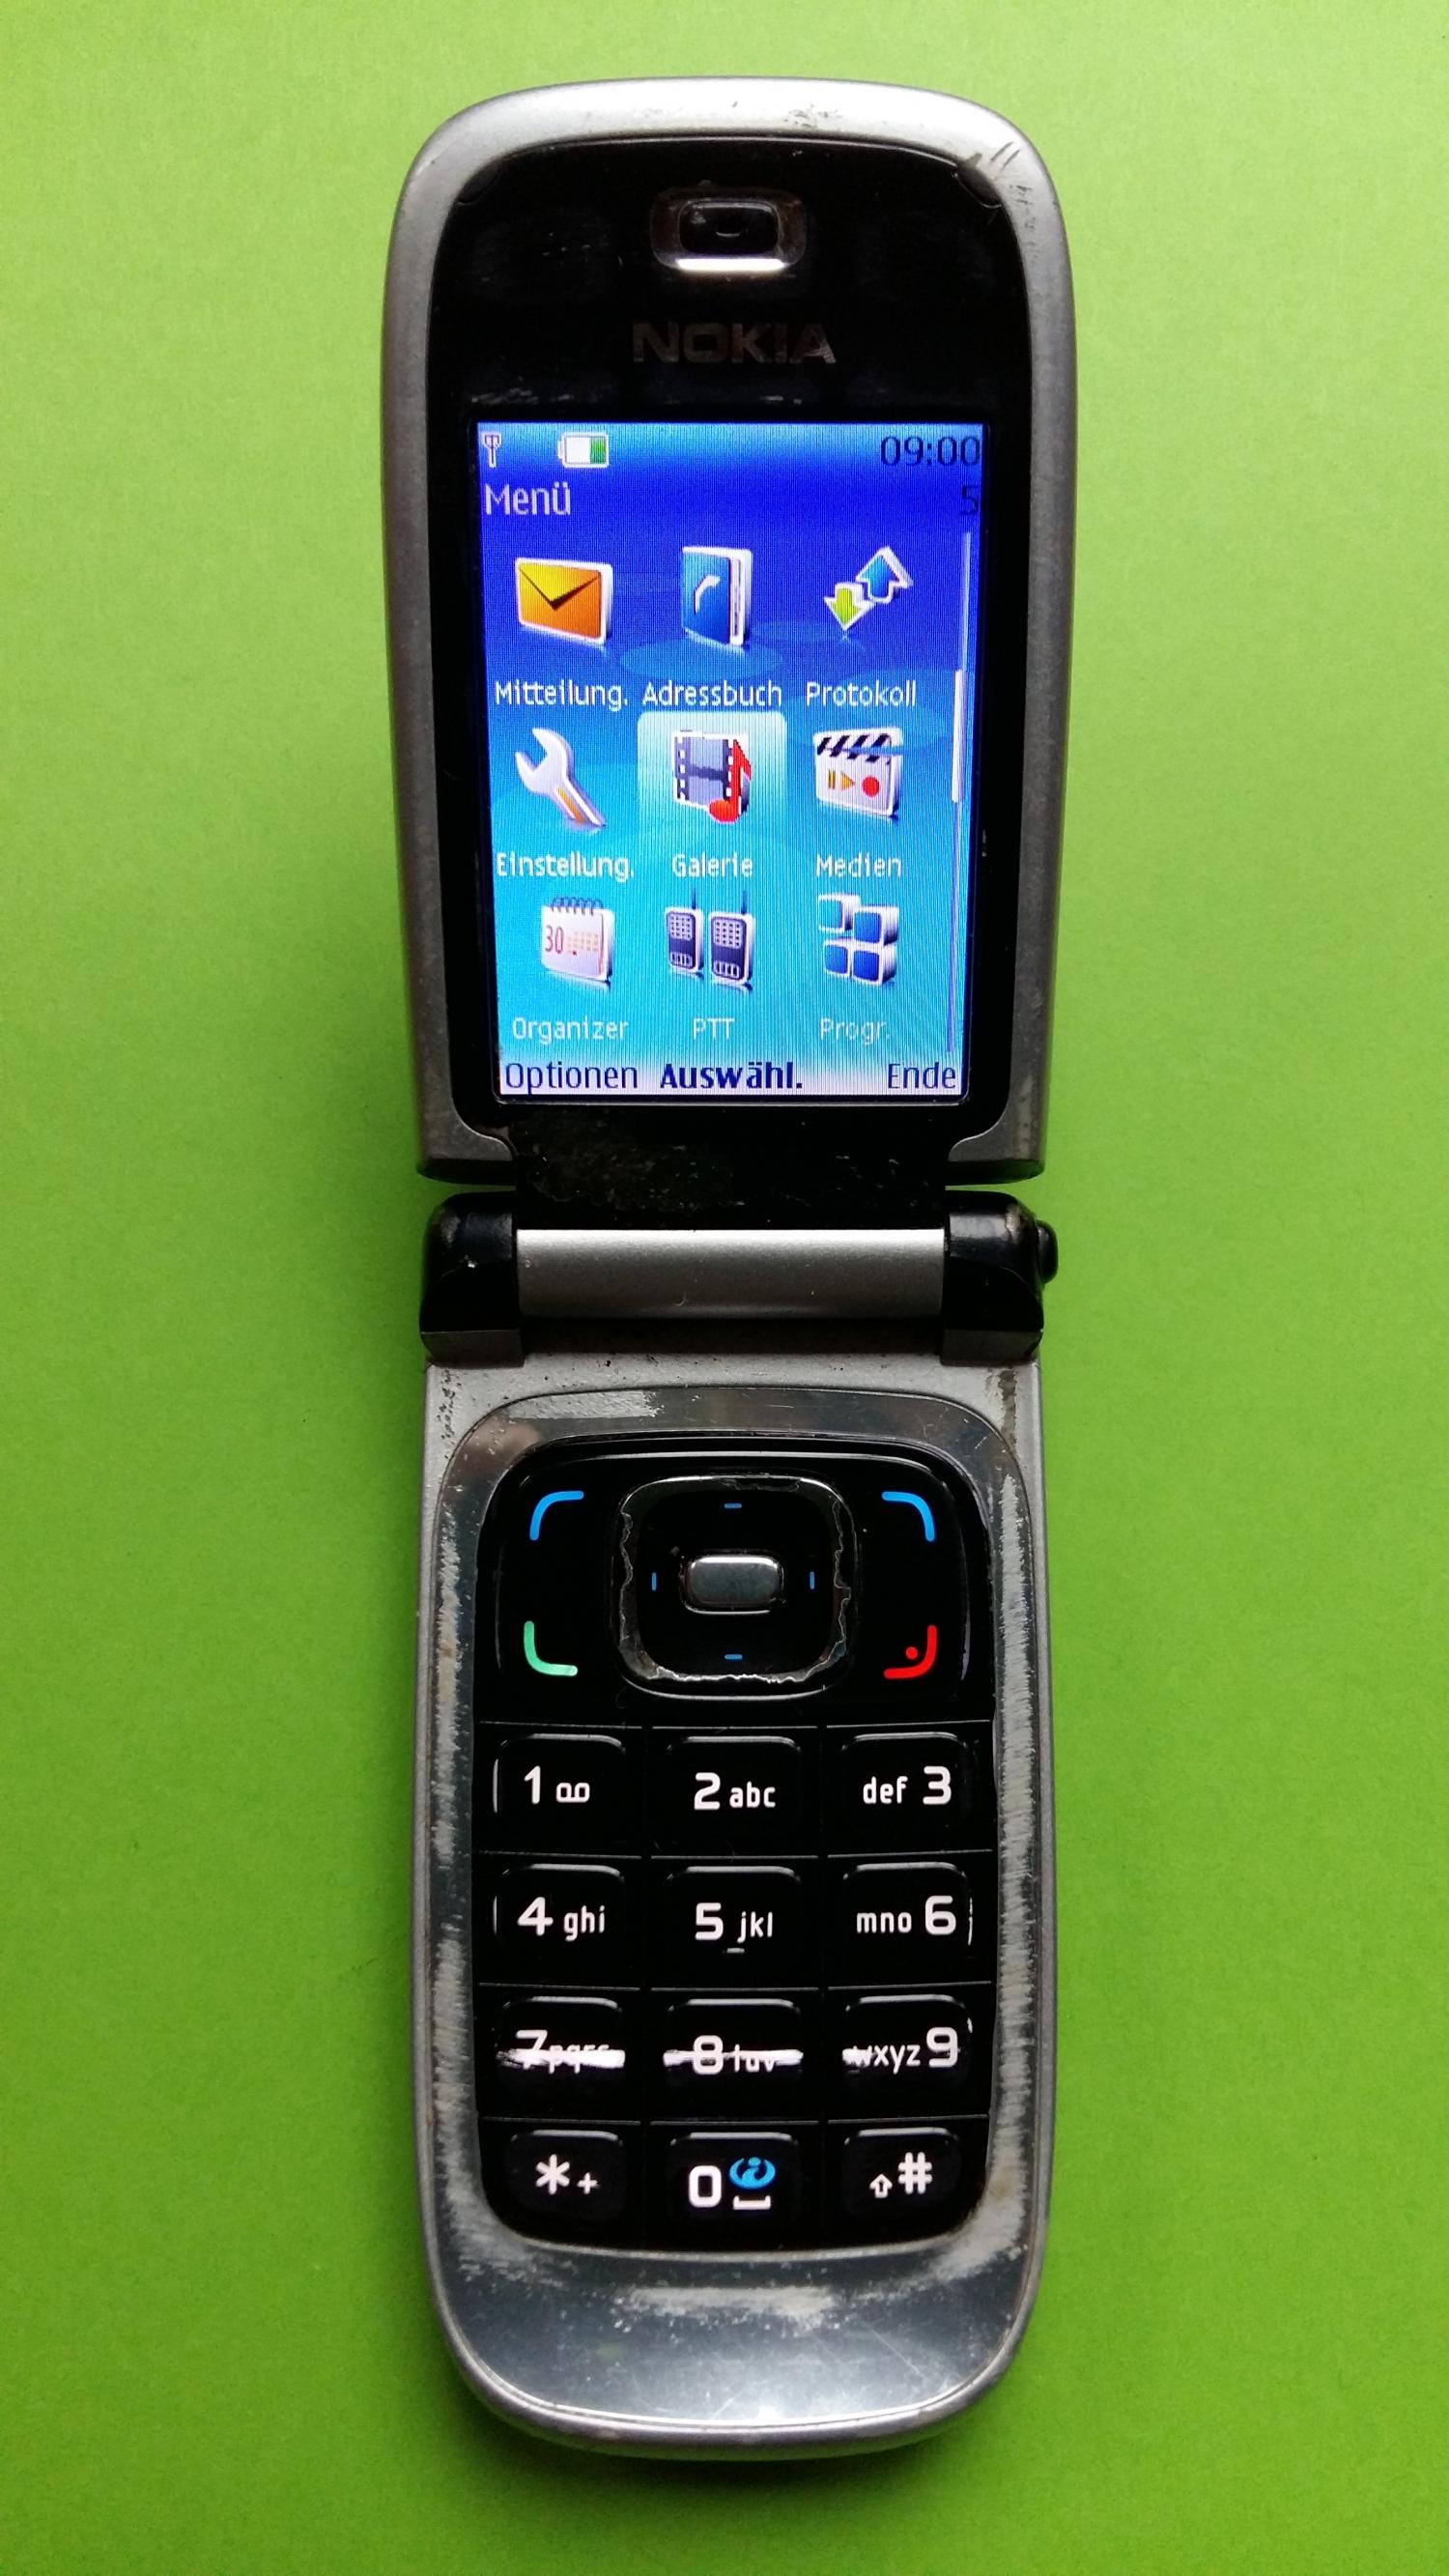 image-7305219-Nokia 6131 (7)2.jpg